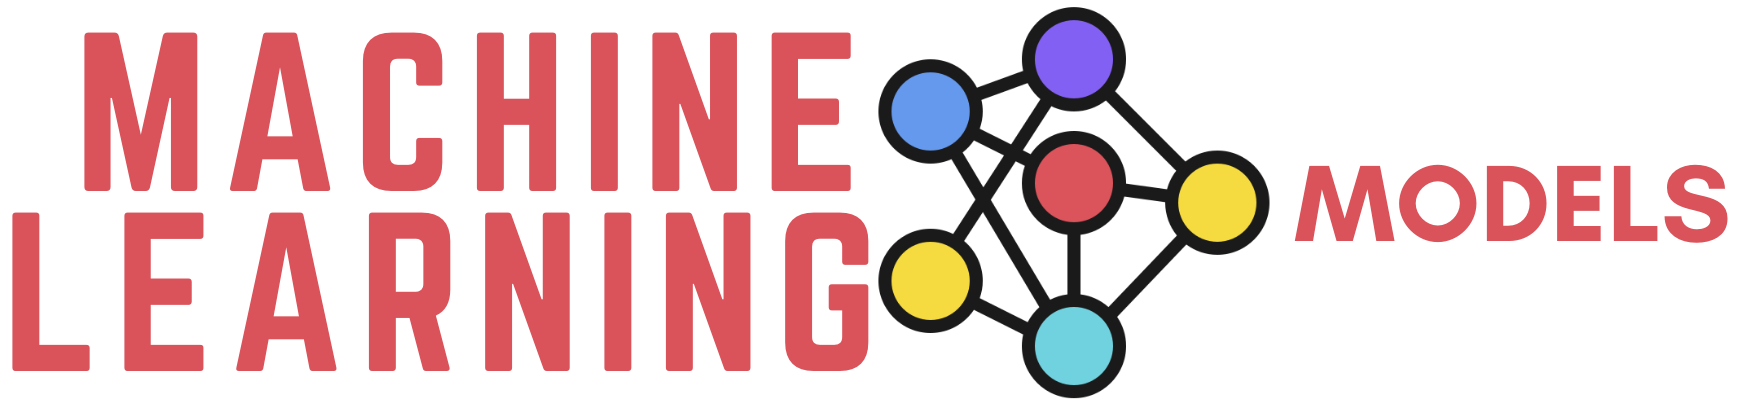 machinelearningmodels-logo